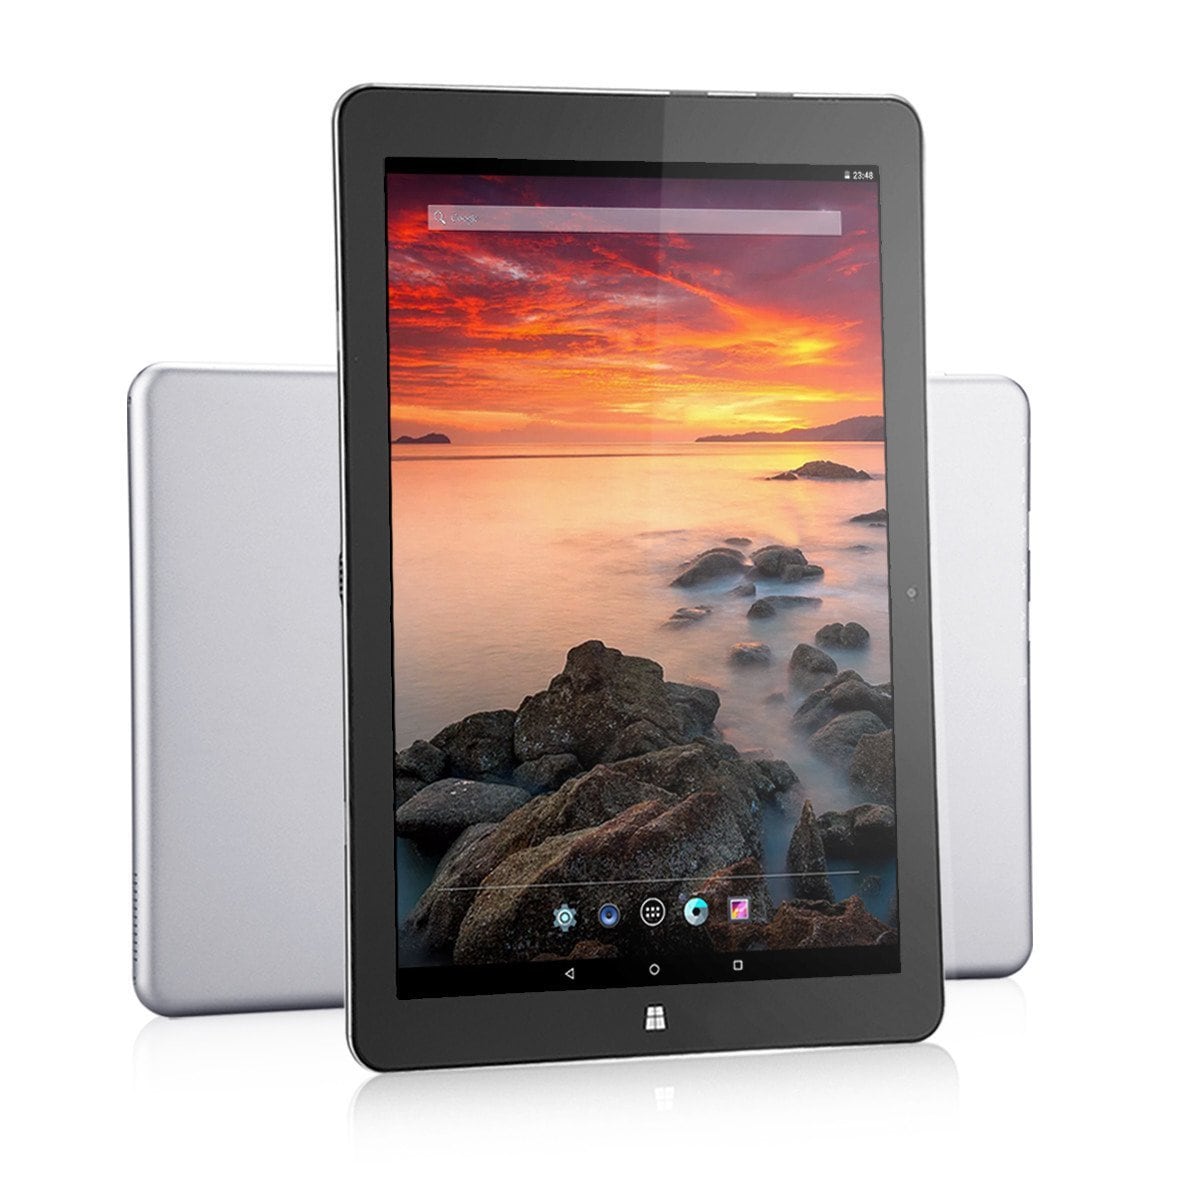 Tre tablet low cost in offerta lampo su Amazon italia: Chuwi Hi10 PLUS, Hi12 e Hi13